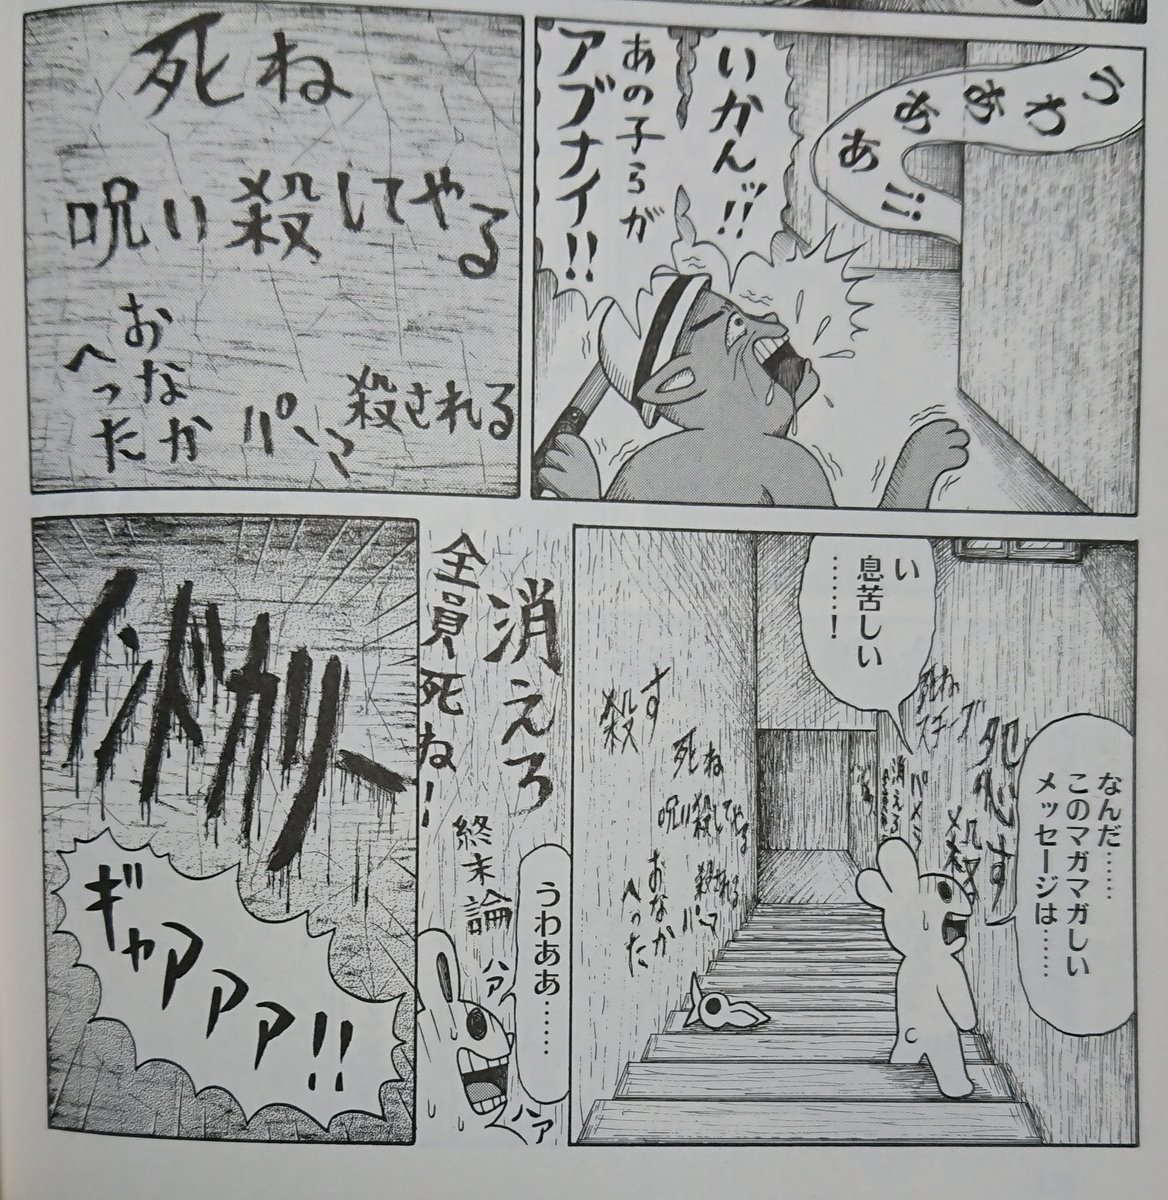 ハトよめの 数ある打率100 ページの中のひとつ Jyusouの漫画